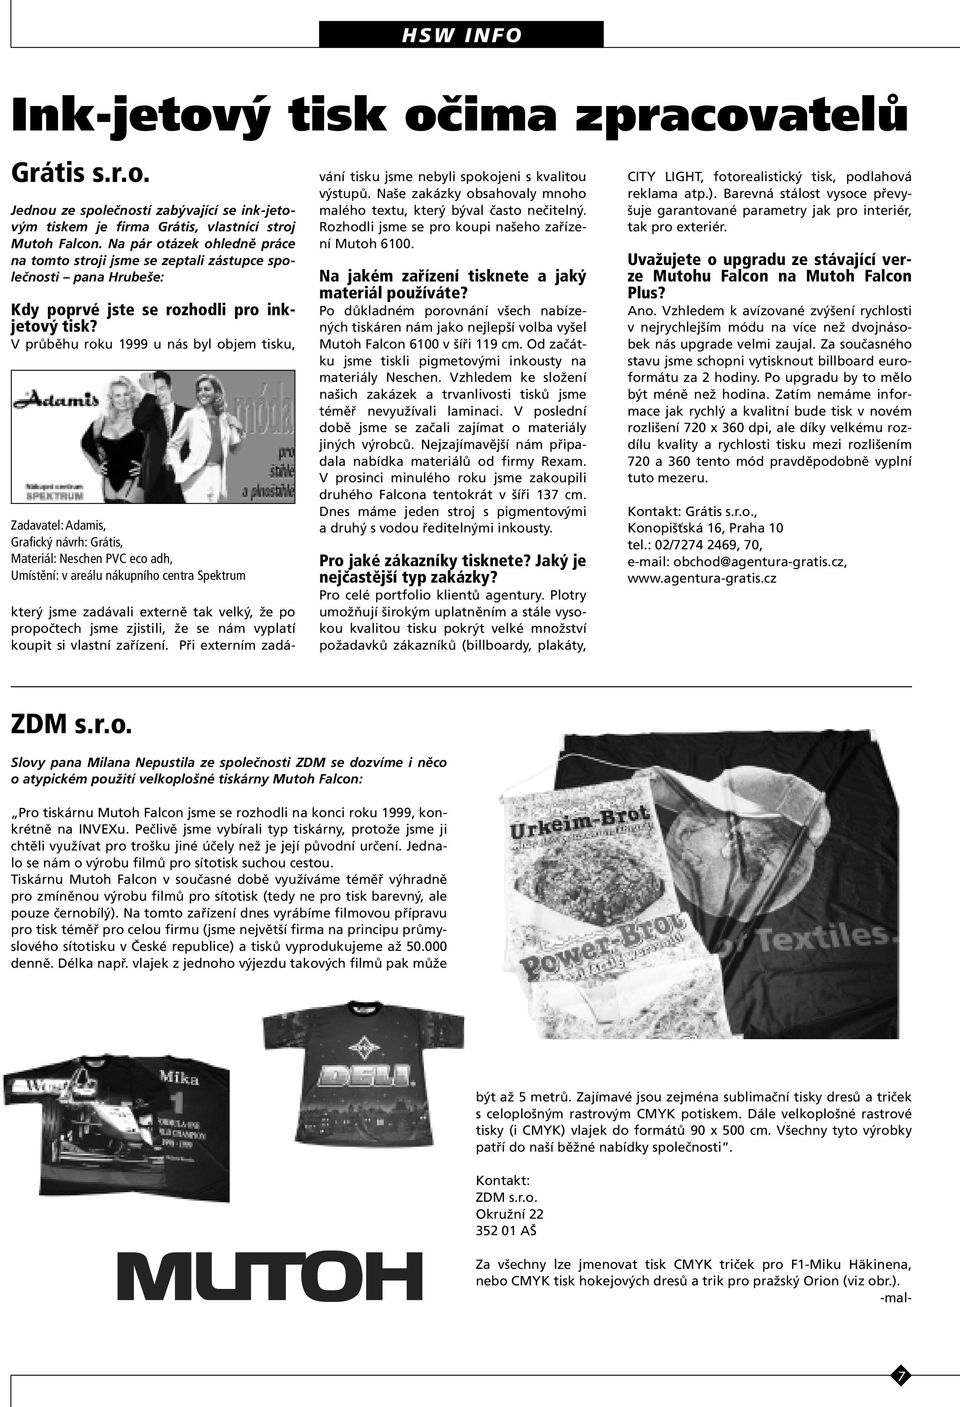 V průběhu roku 1999 u nás byl objem tisku, Zadavatel:Adamis, Grafický návrh:grátis, Materiál:Neschen PVC eco adh, Umístění:v areálu nákupního centra Spektrum který jsme zadávali externě tak velký, že